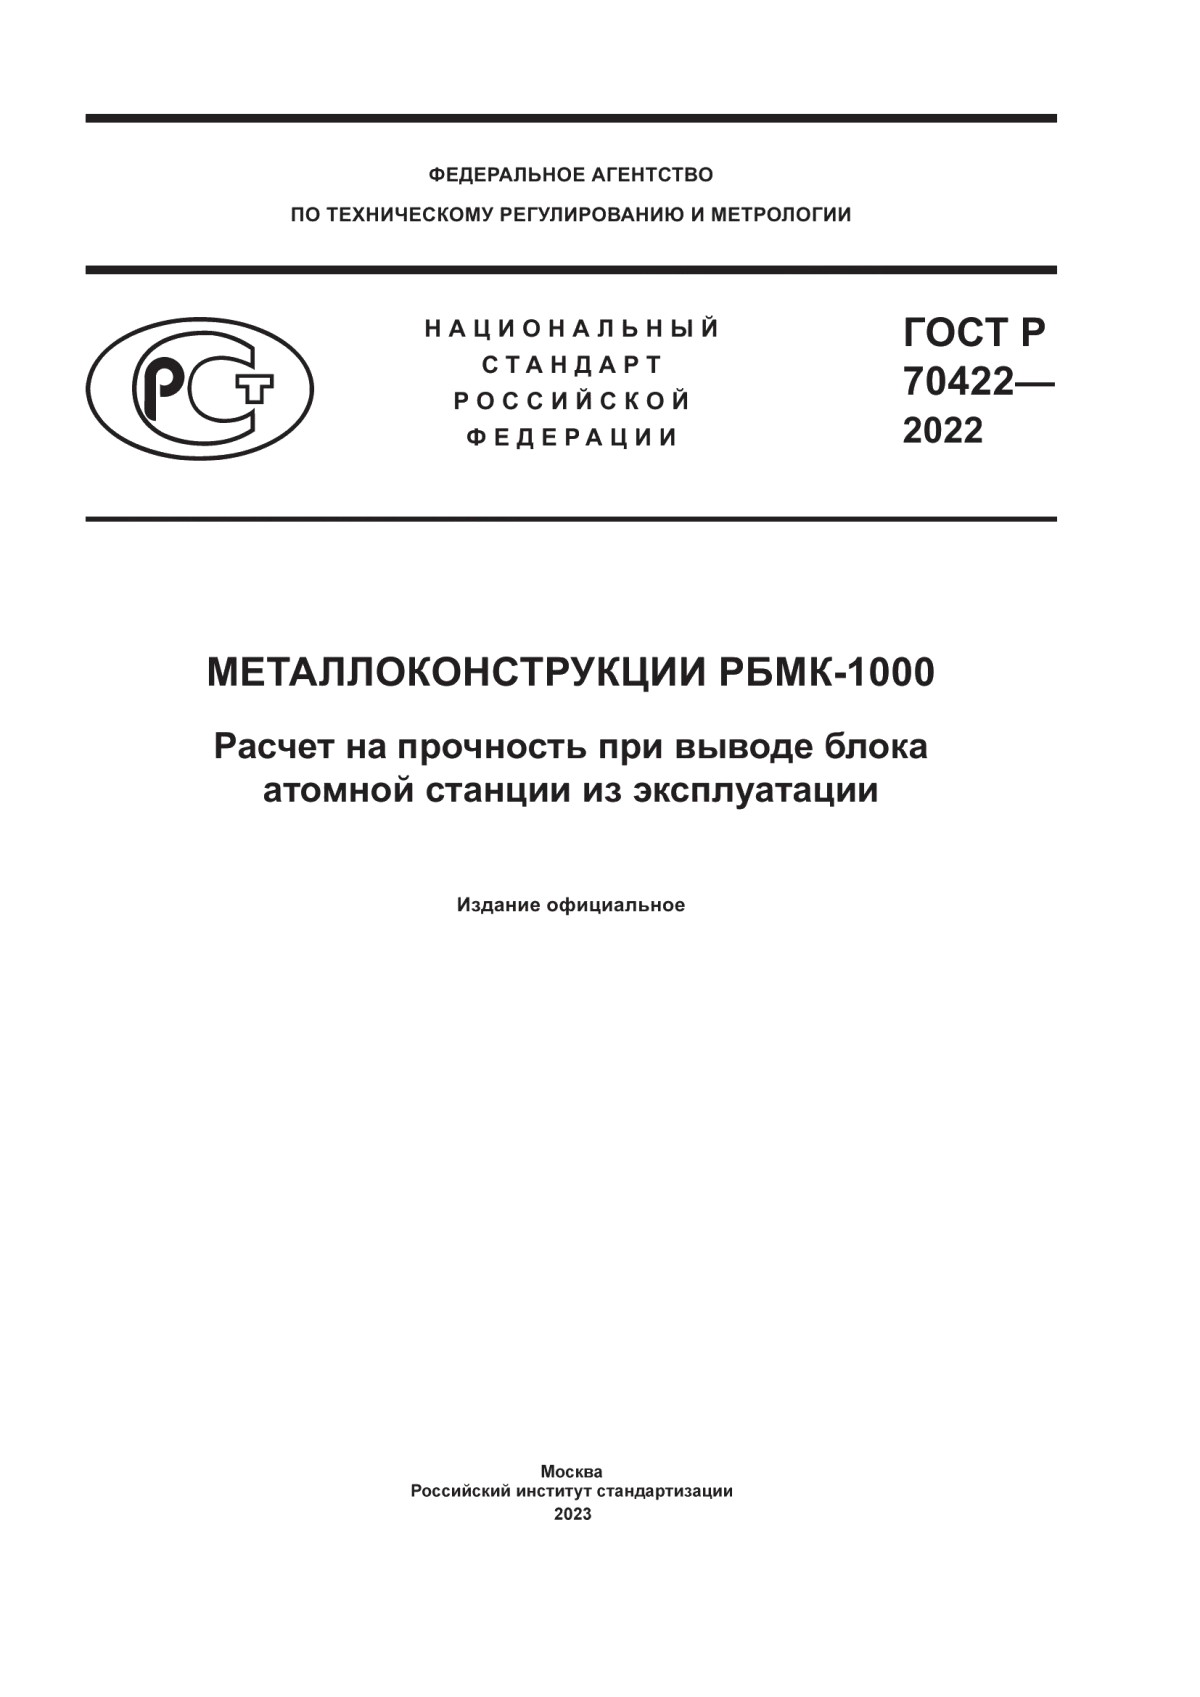 ГОСТ Р 70422-2022 Металлоконструкции РБМК-1000. Расчет на прочность при выводе блока атомной станции из эксплуатации